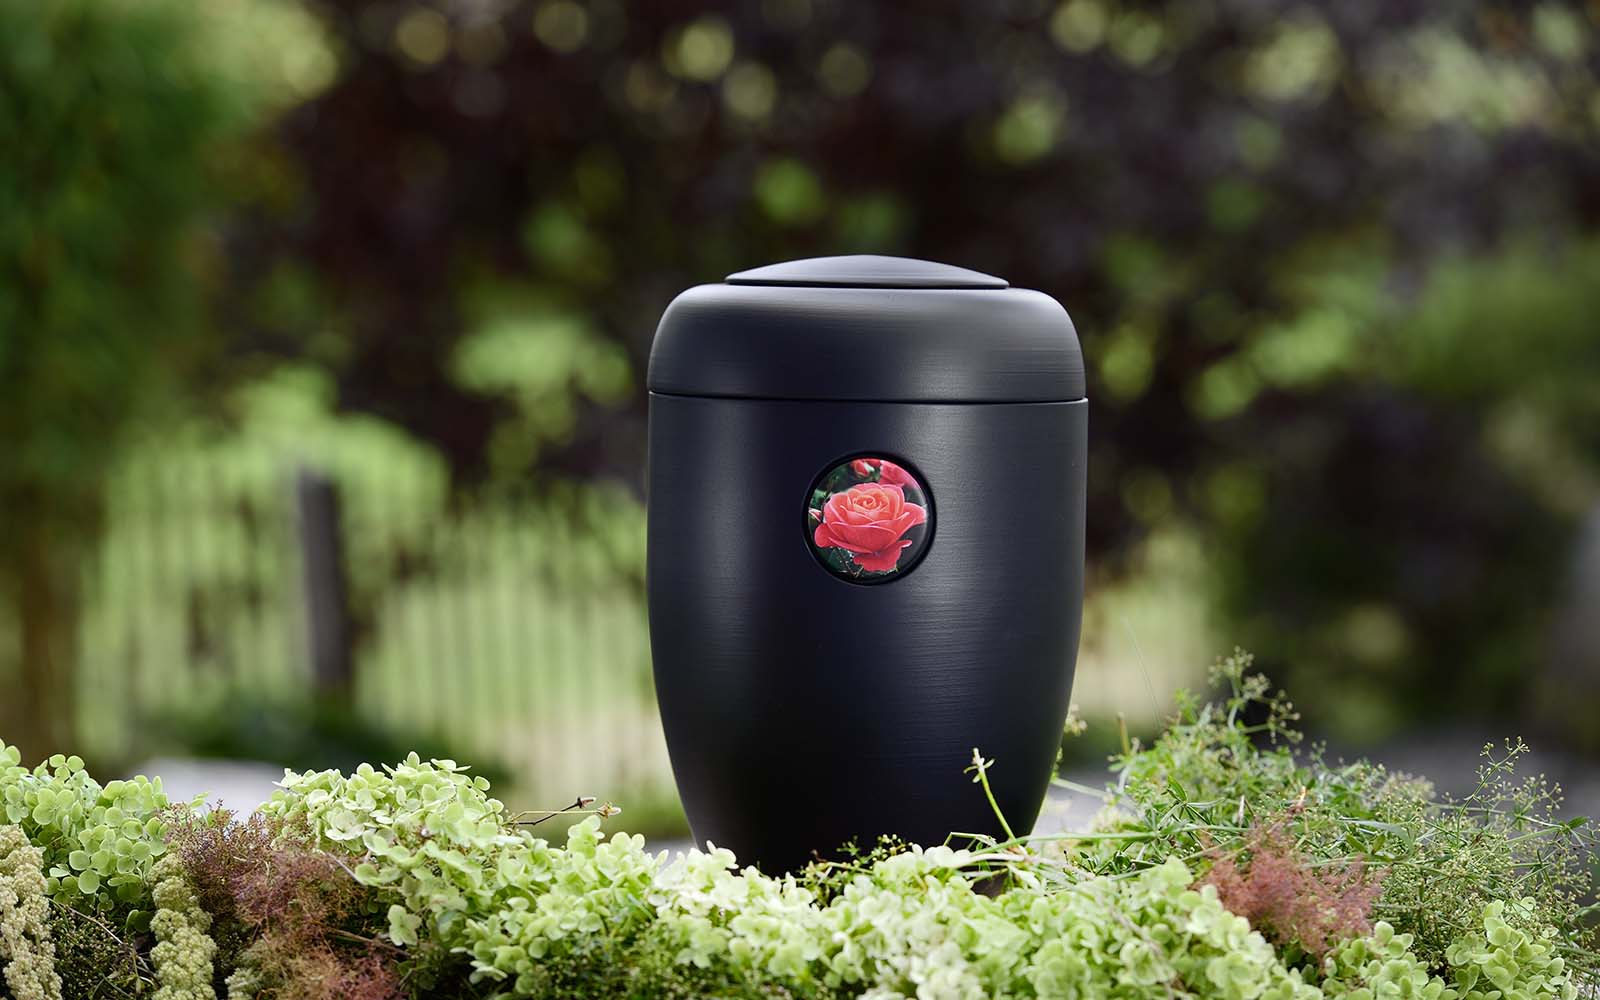 Schwarze, matte Design-Urne mit lachsfarbener Rose-Button, umrahmt von grünen Blumen.